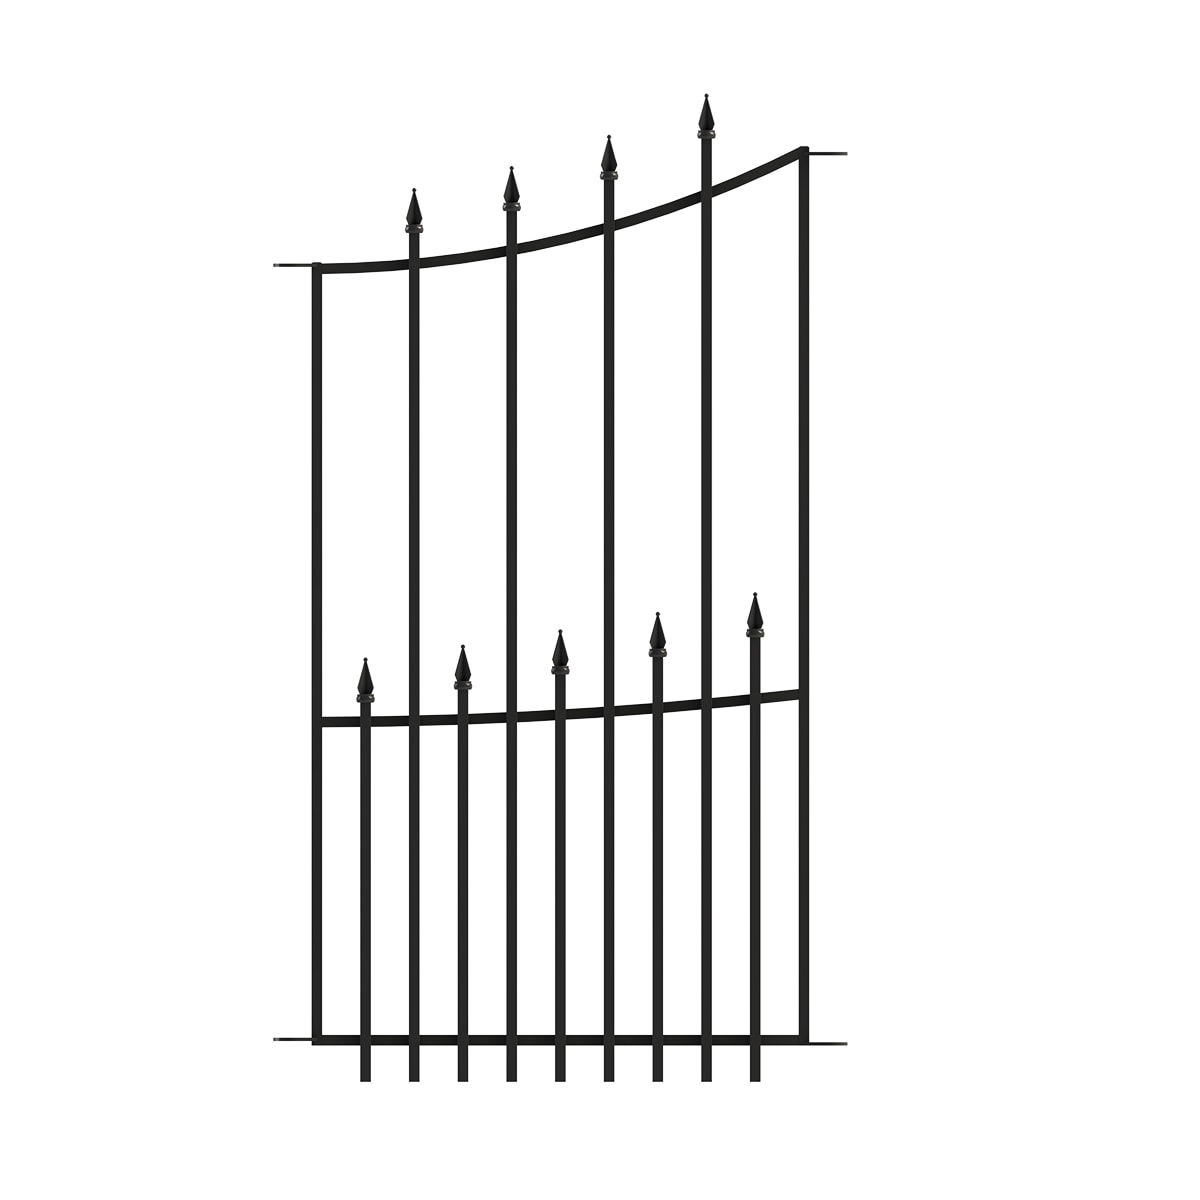 YARDLINK 4-ft H x 2-ft W Black Steel Decorative Fence Panel at